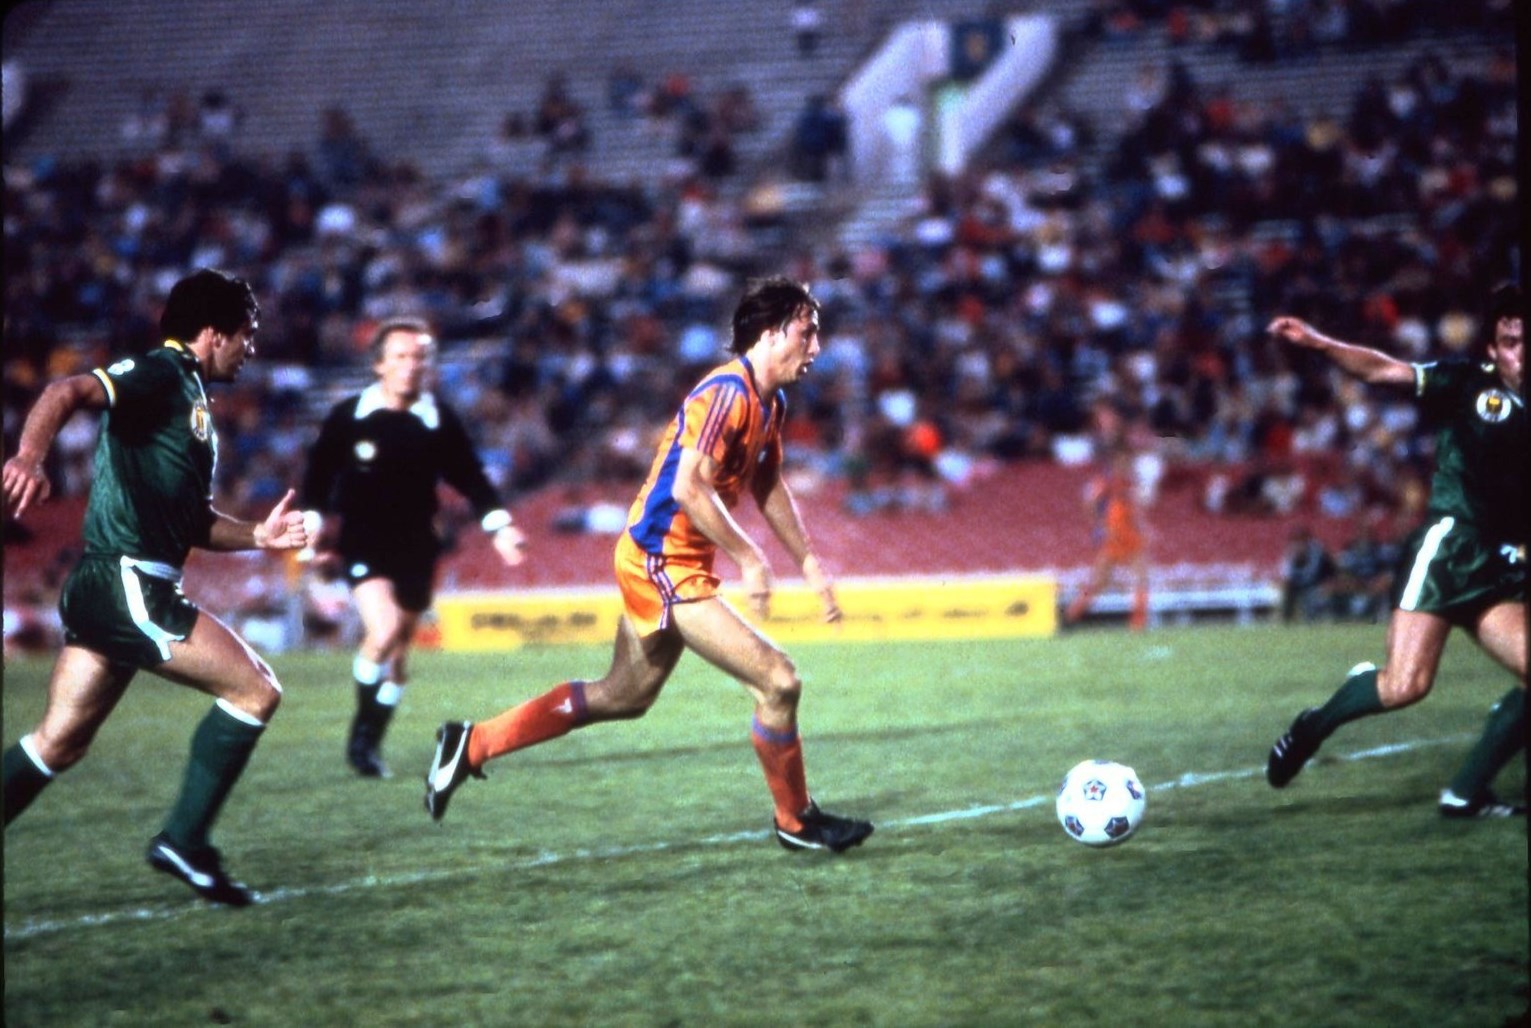 NASL-Johan Cruyff 1979